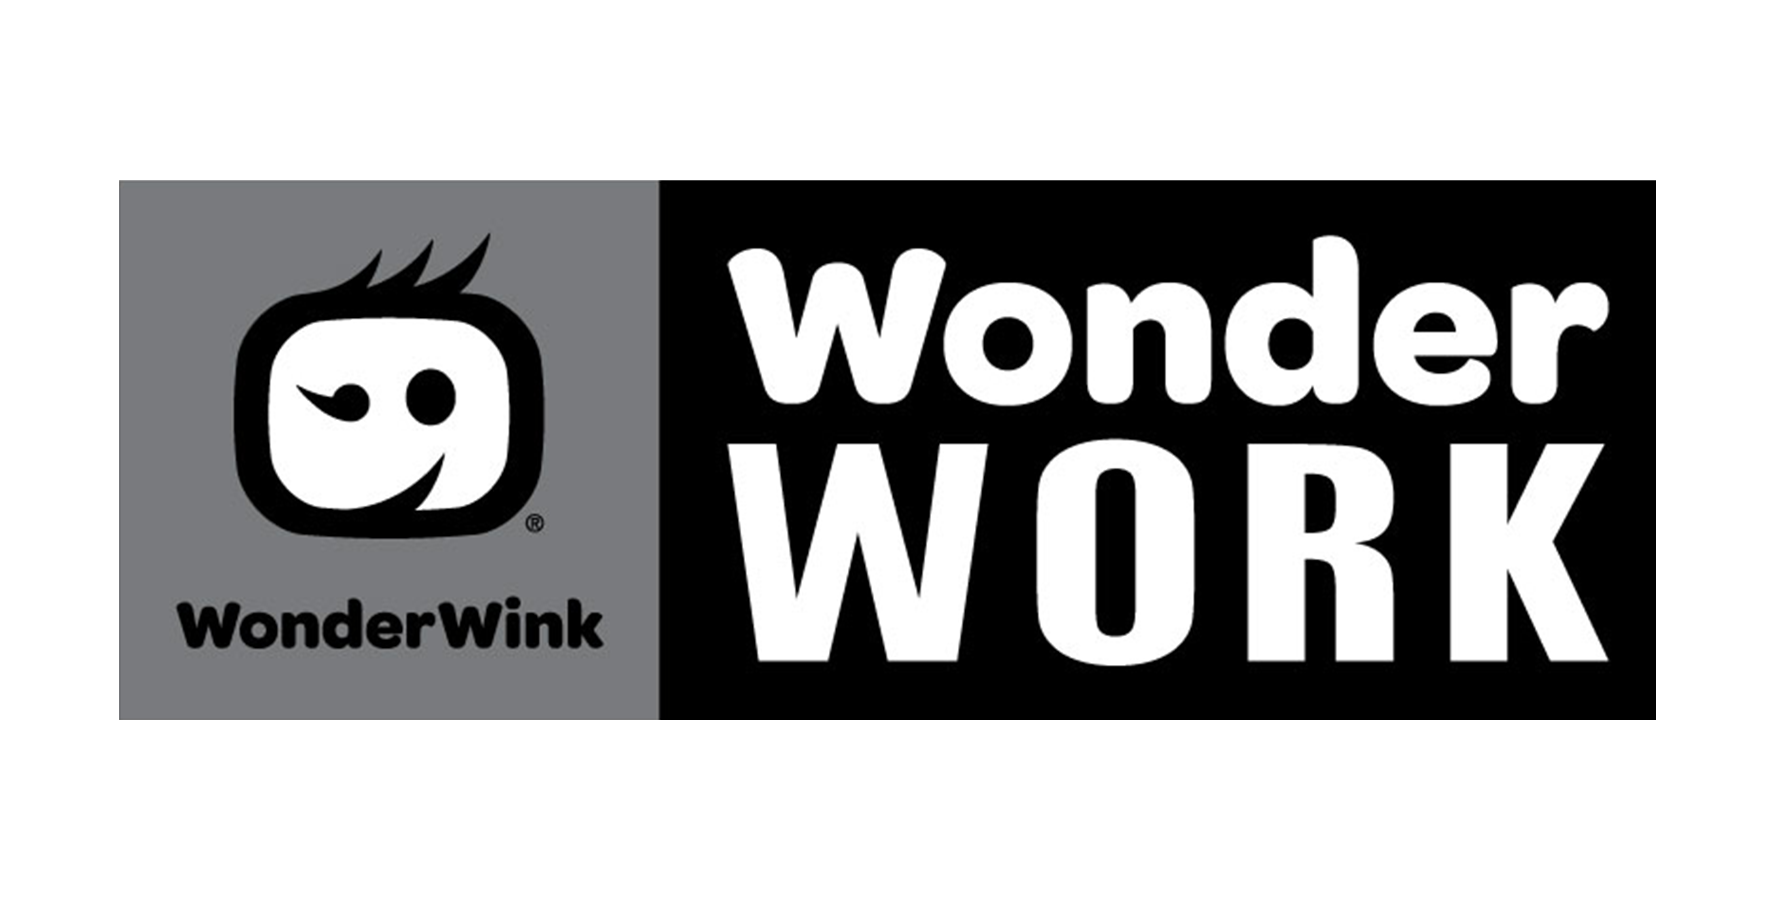 WonderWink Wonderwork Scrubs